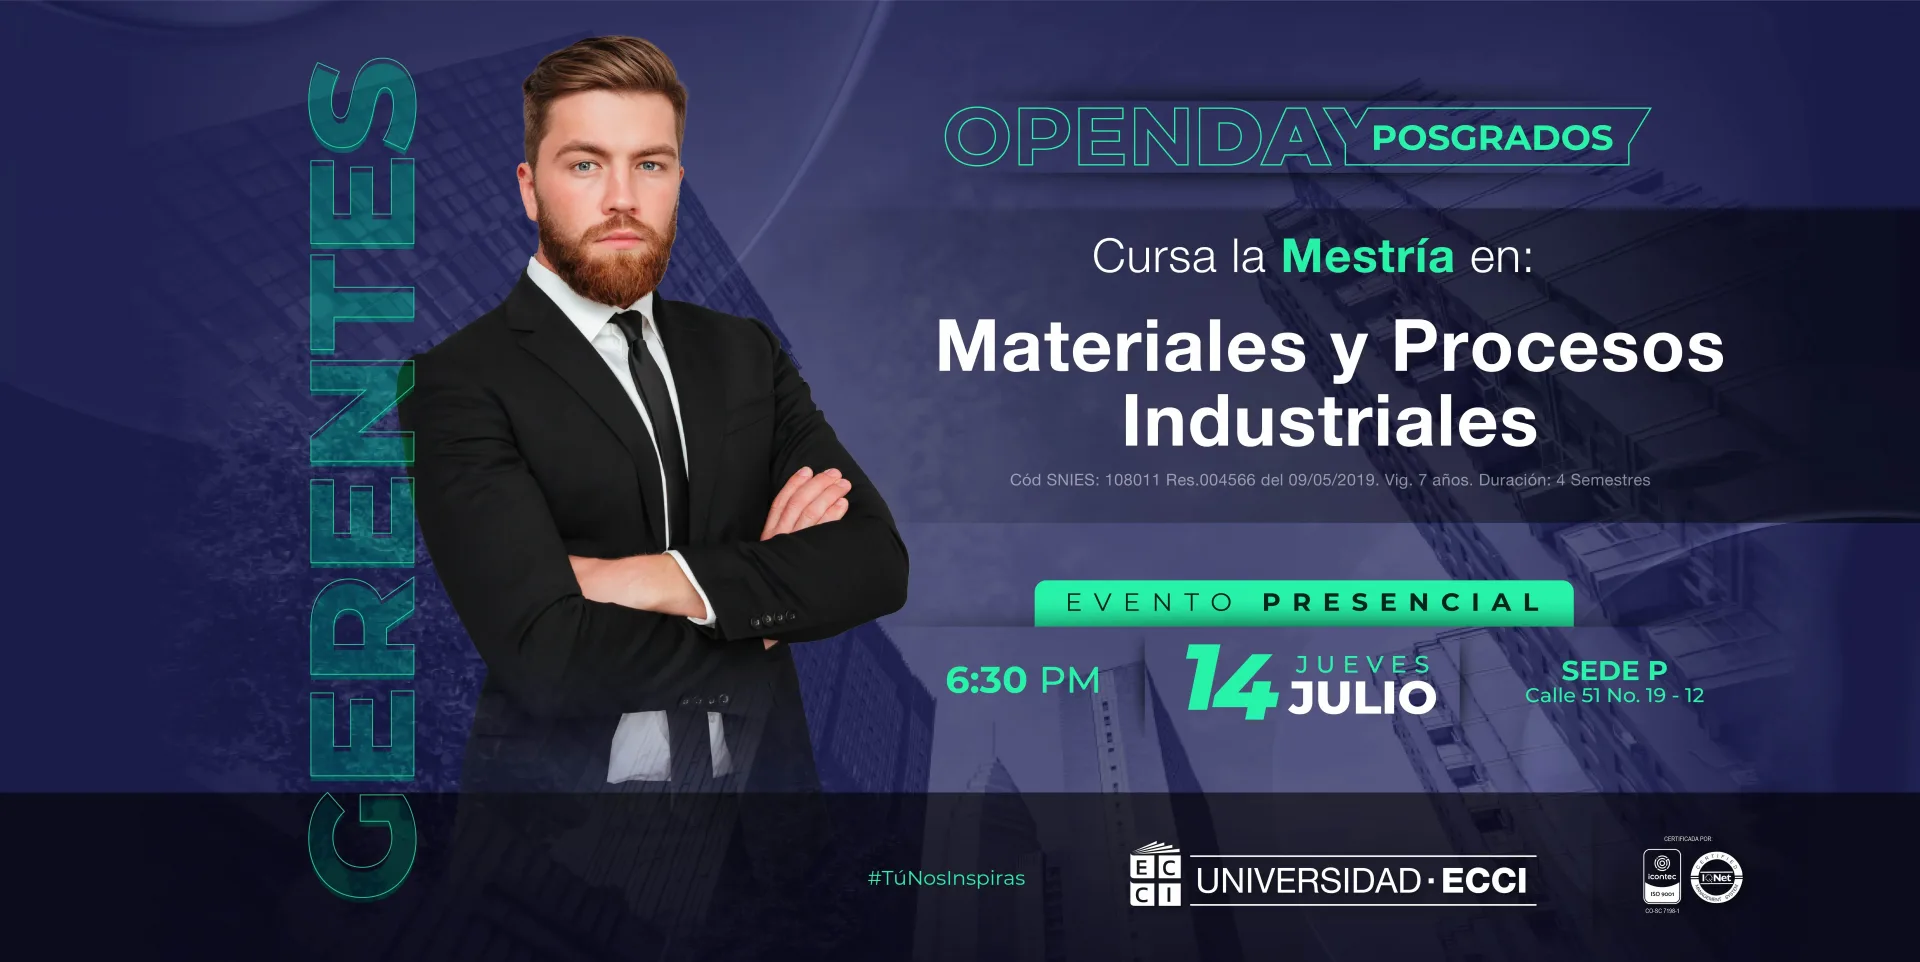 Maestría En Materiales Y Procesos Industriales. Open Day: posgrados.